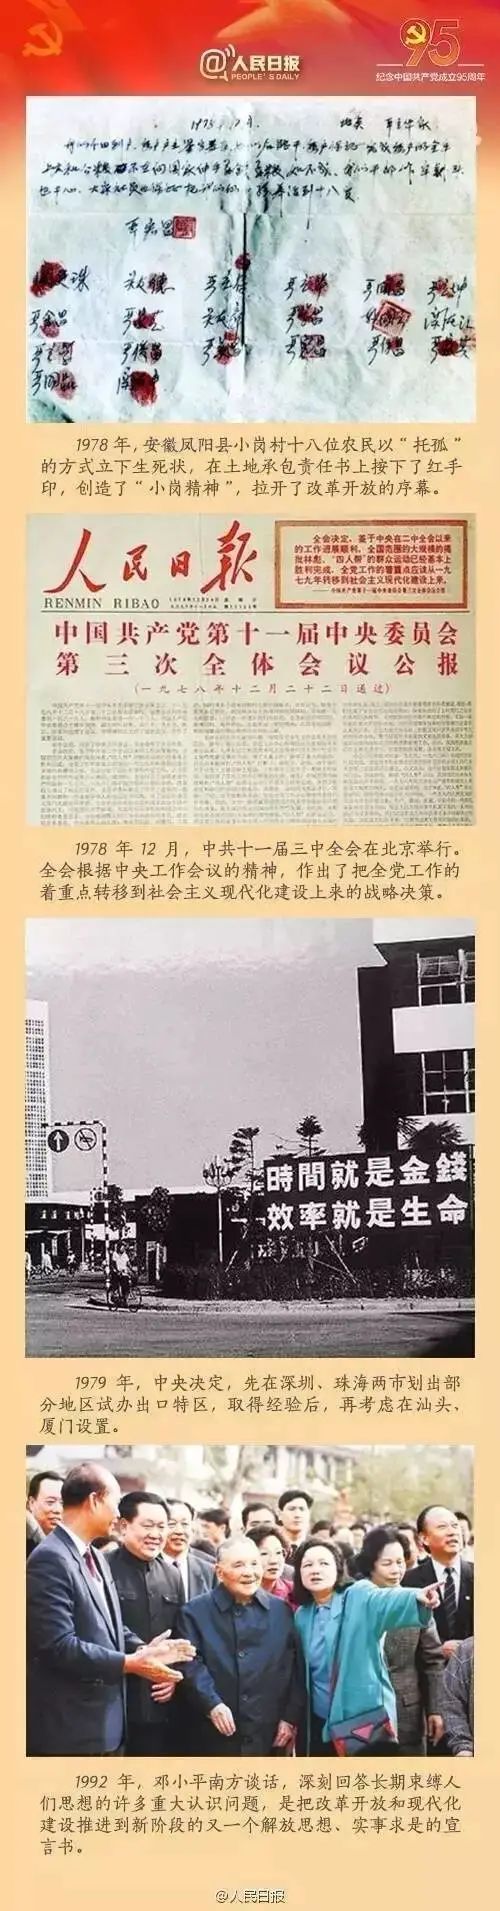 党史献礼9张图读懂中国共产党100年发展历程